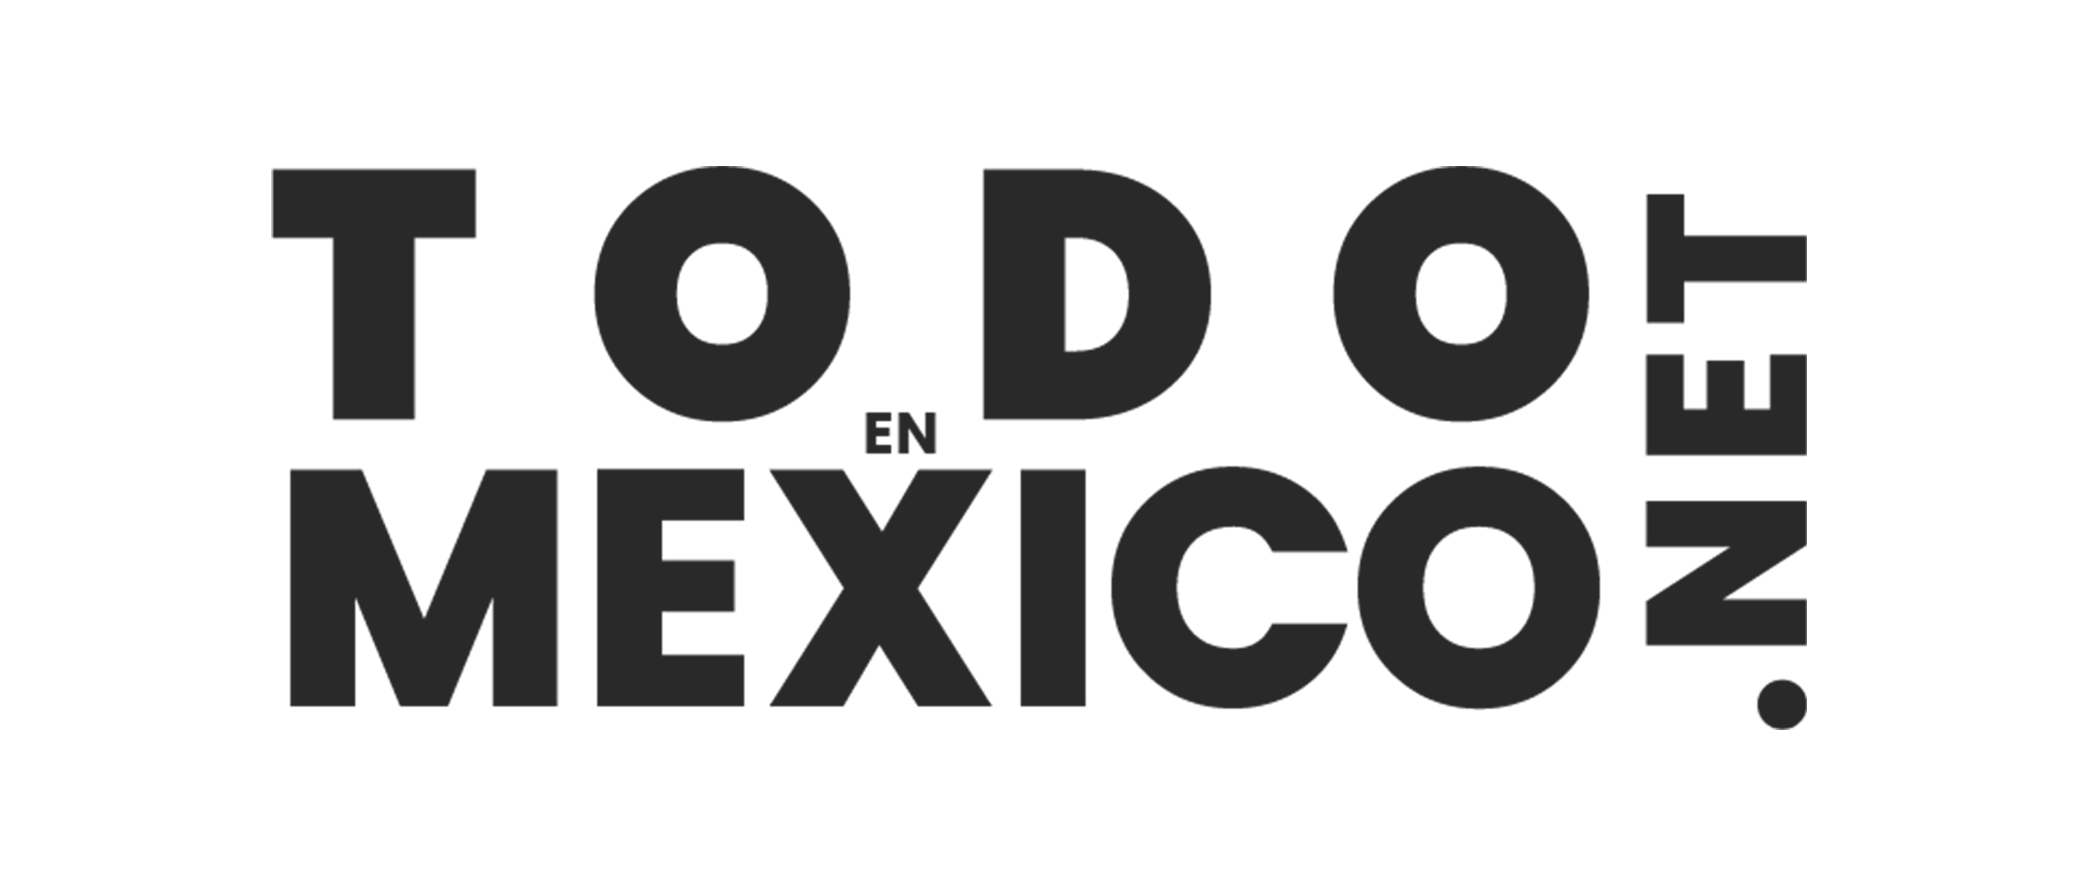 Todo en Mexico logo for DeliveryMexico